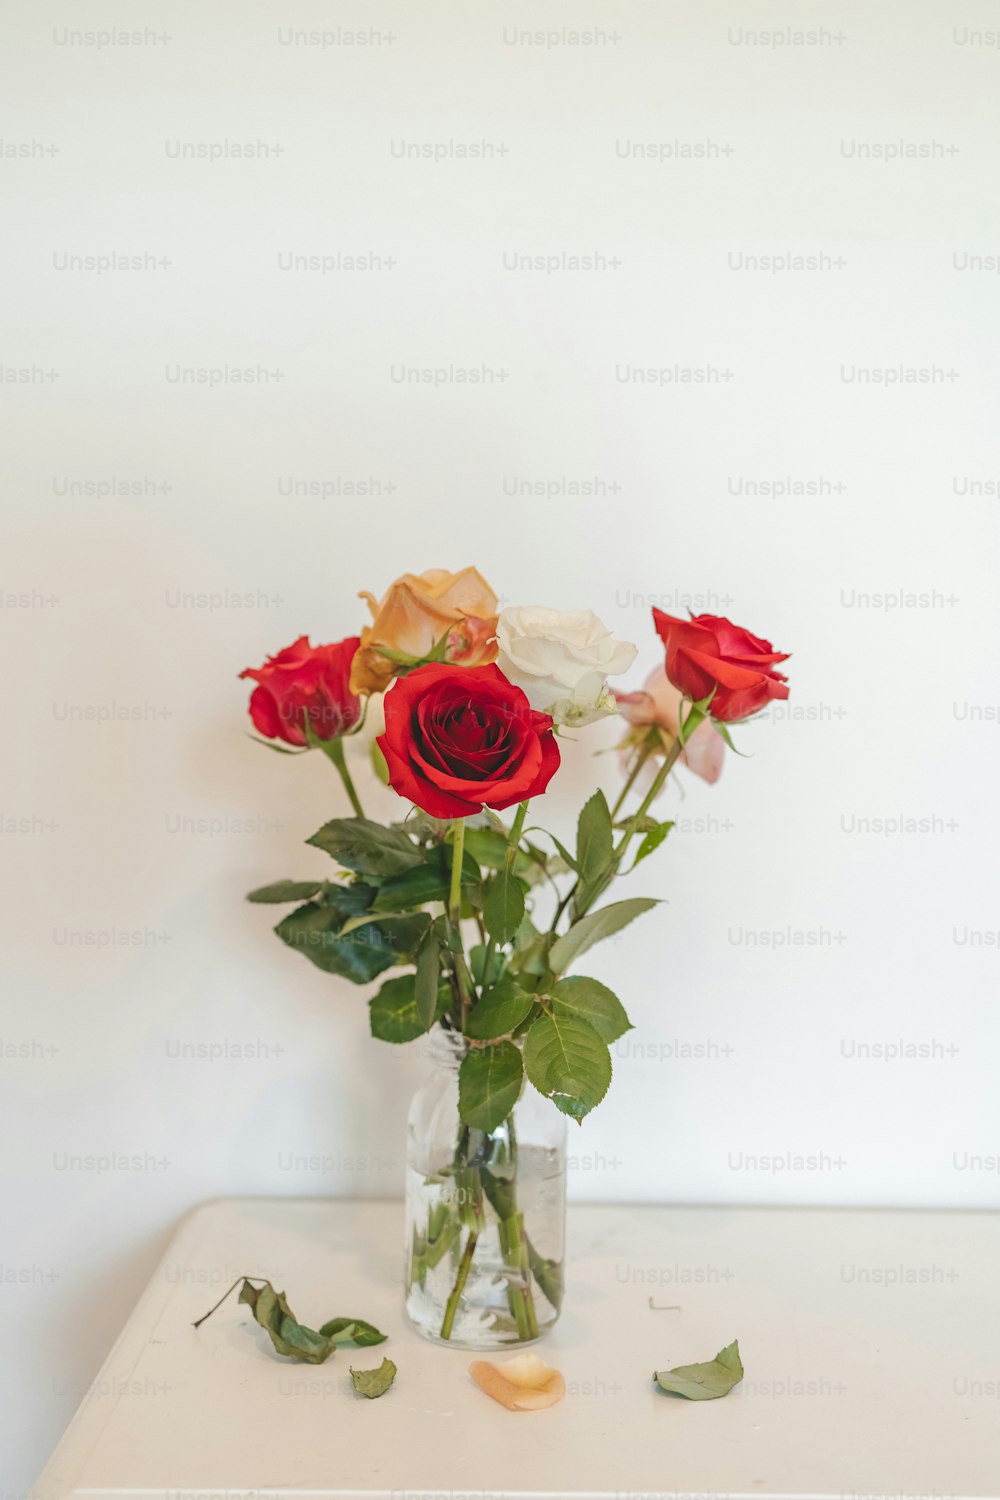 테이블 위에 빨간색과 흰색 장미로 채워진 꽃병